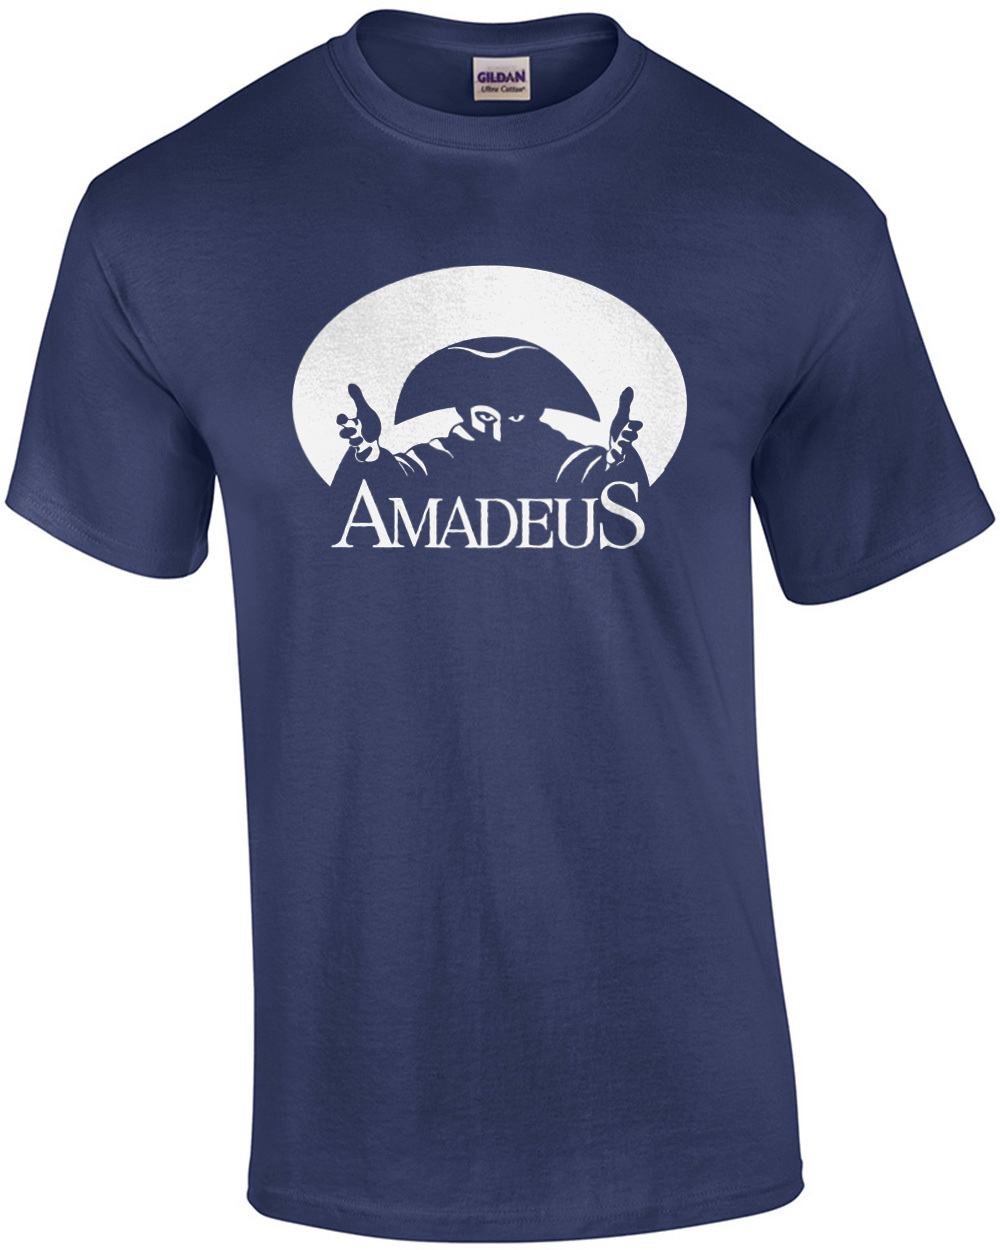 Amadeus 80 S T Shirt Ebay